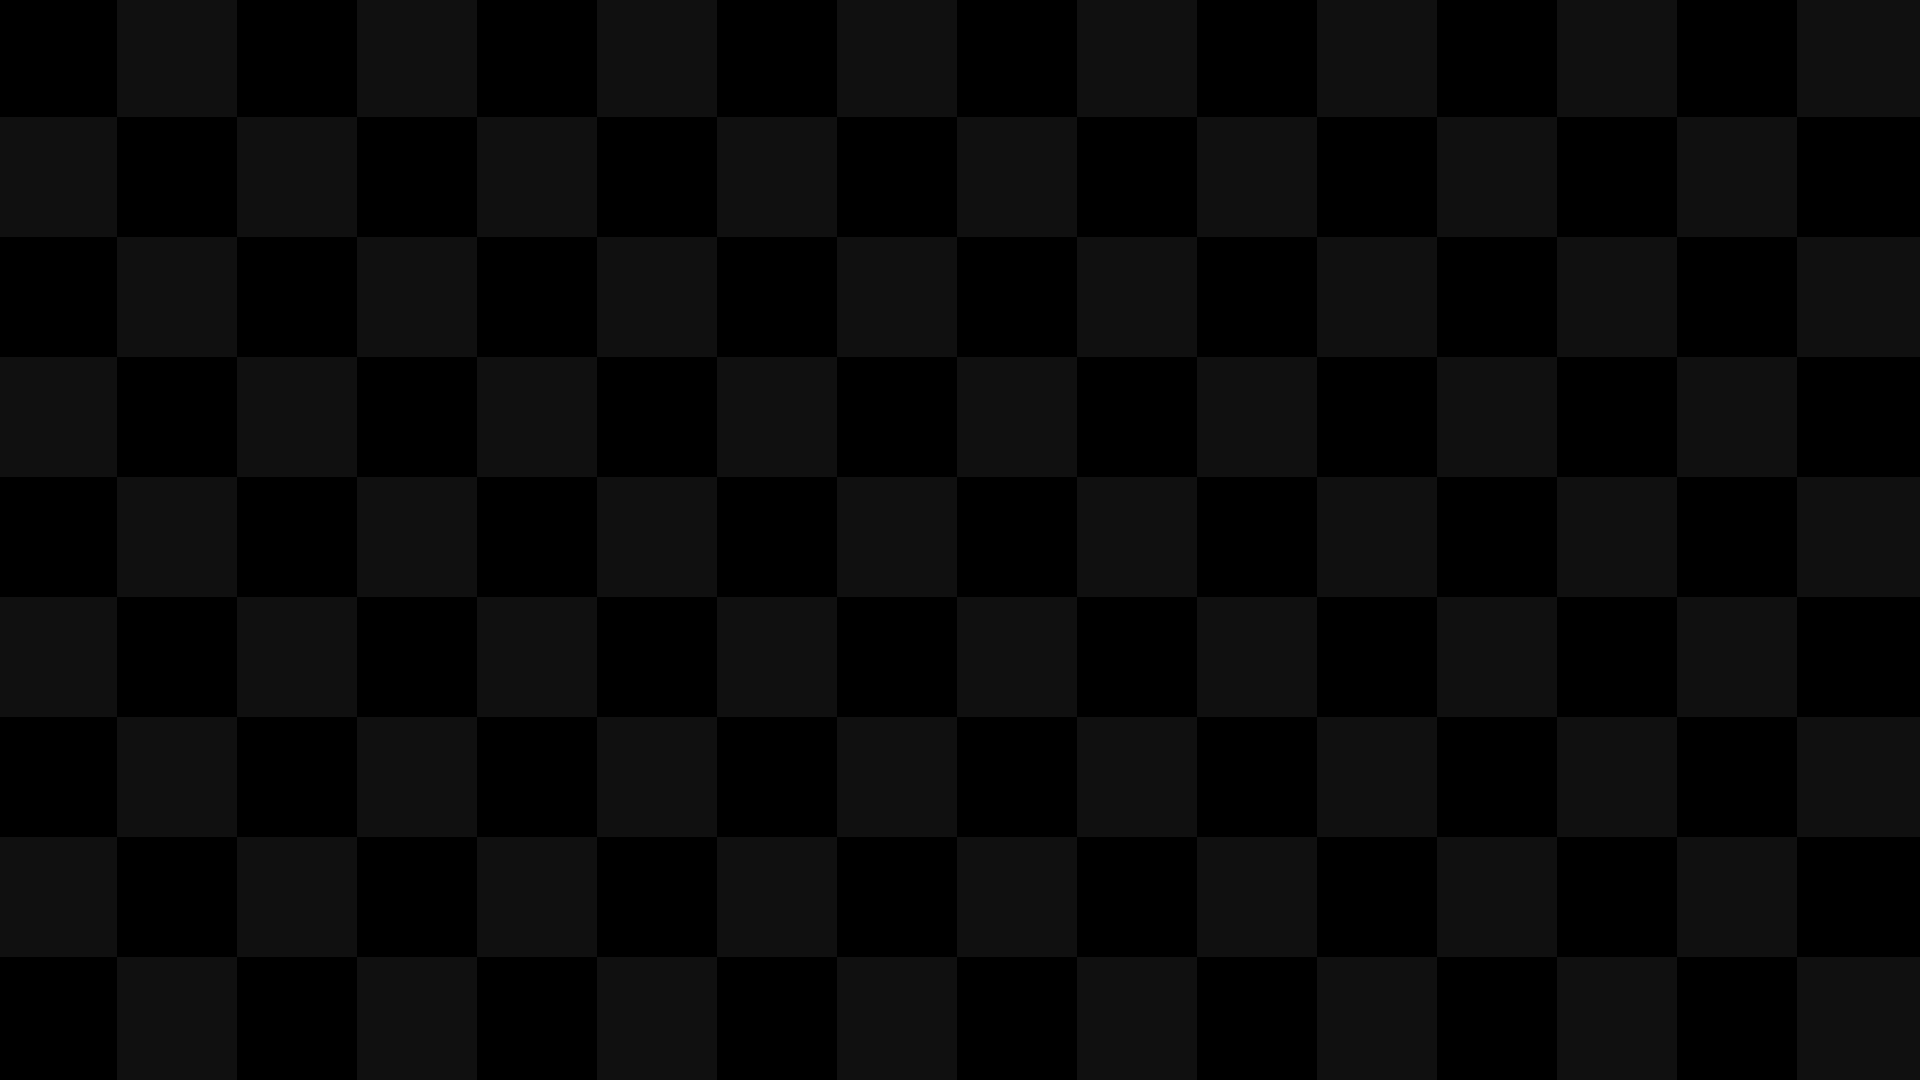 Шахматная доска на экране монитора. Черные обои. Черная клетка. Черный квадратик. Черный пиксель.